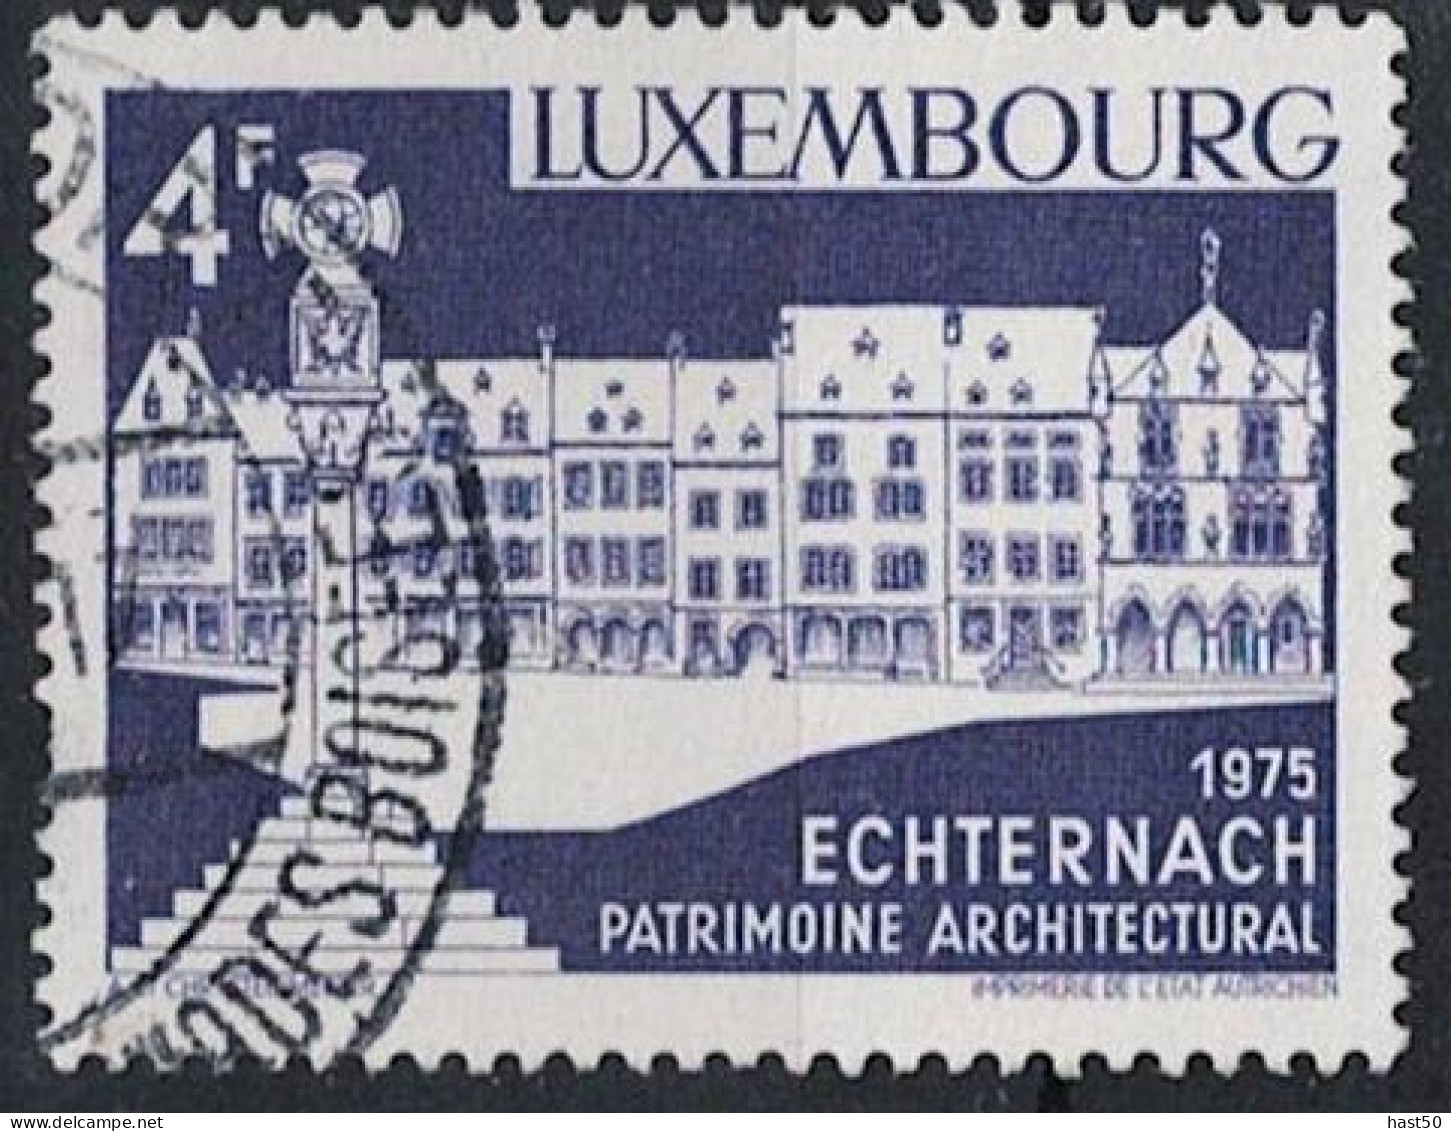 Luxemburg - Echternach, Marktplatz (MiNr: 902) 1975 - Gest Used Obl - Oblitérés